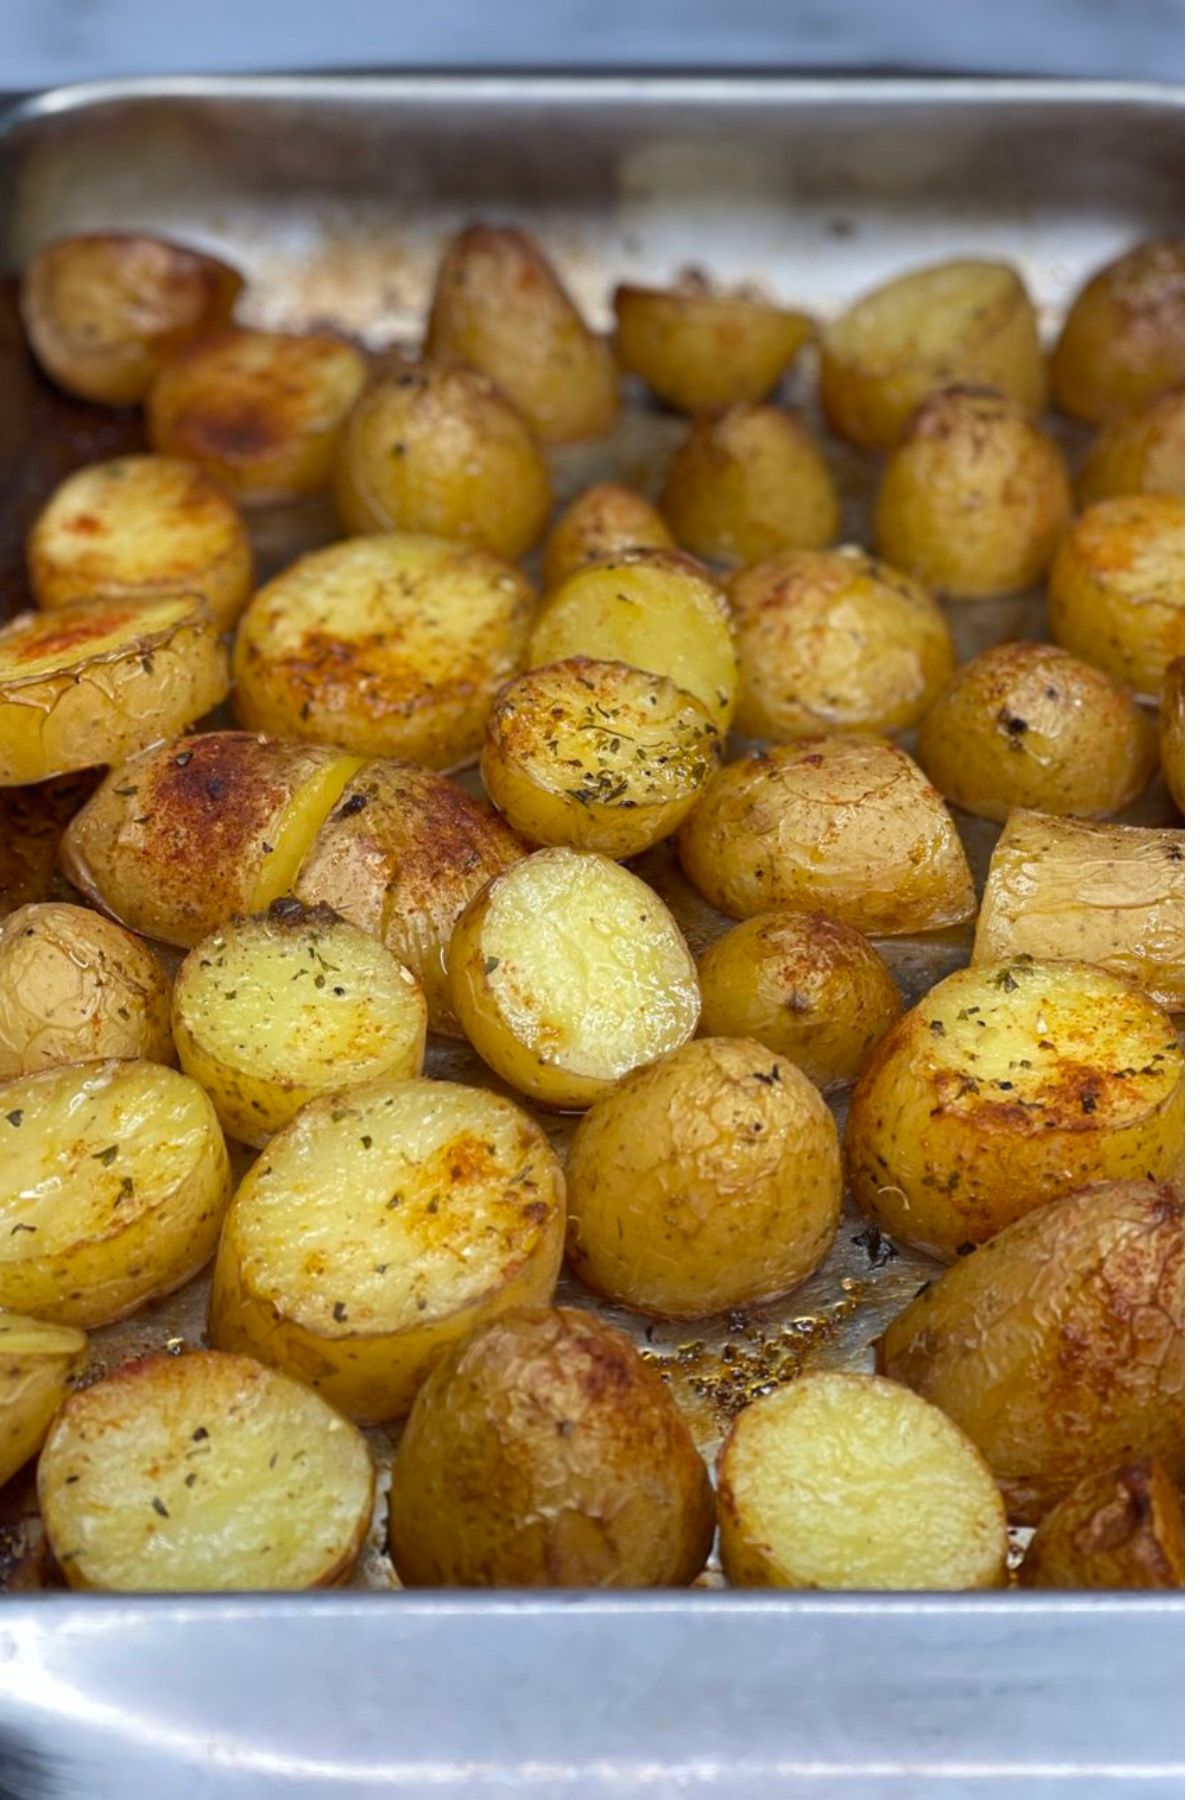 Baked Potatoes 